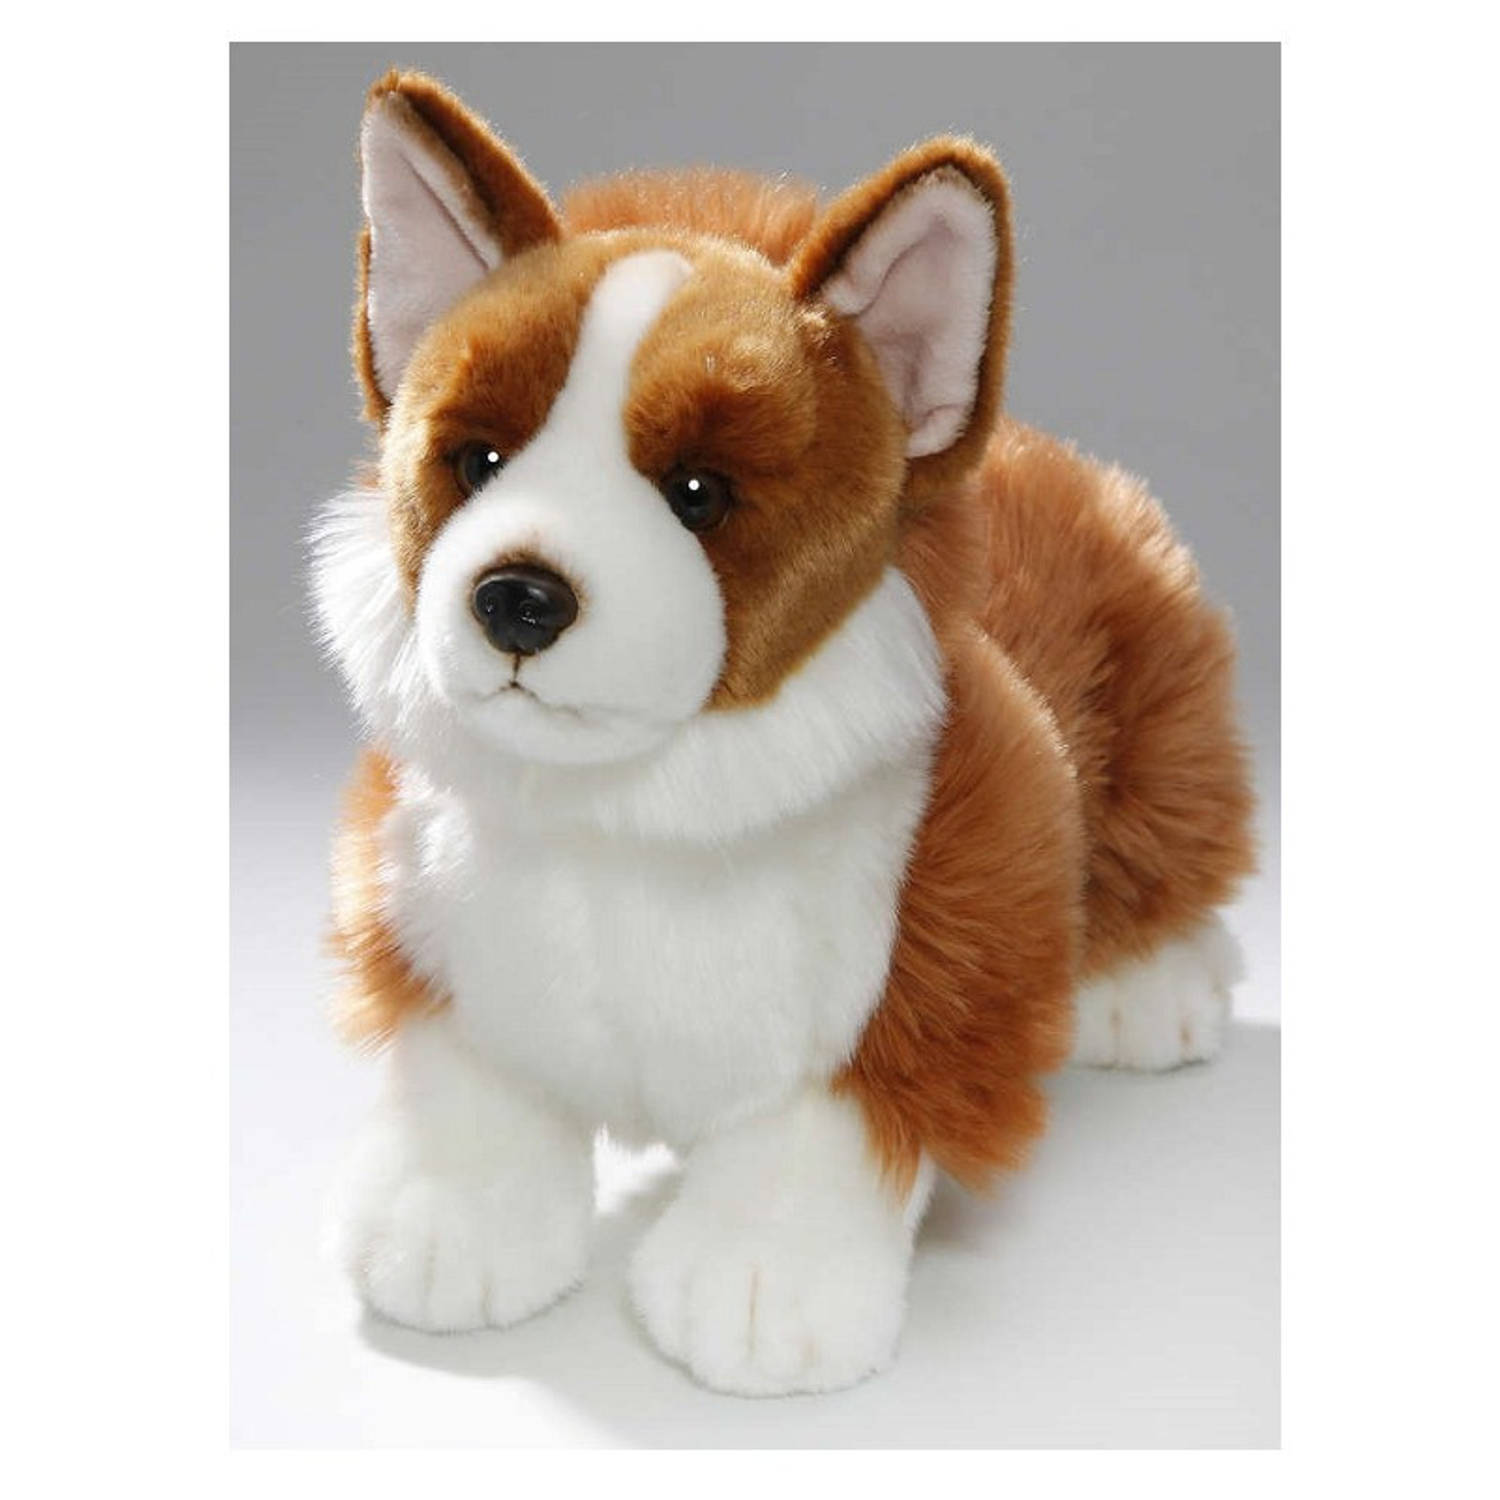 Pluche bruin/witte Corgi hond knuffel 35 cm - Honden huisdieren knuffels - Speelgoed voor kinderen